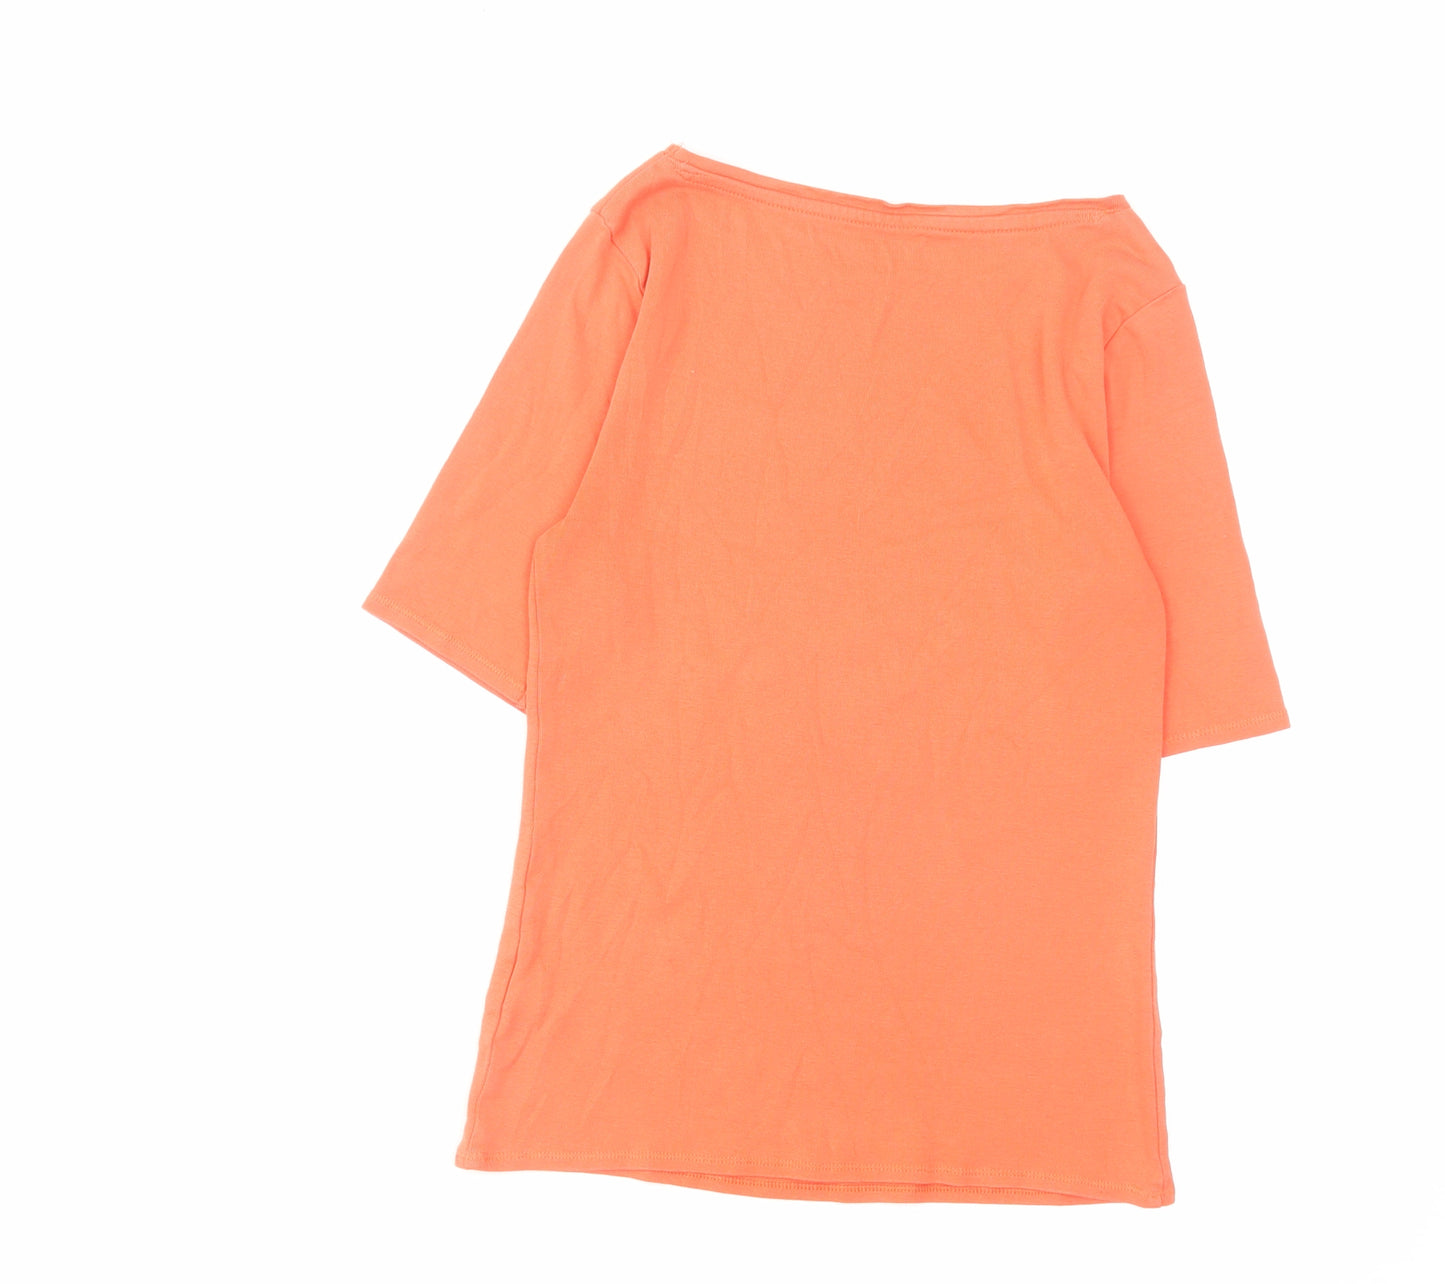 Marks and Spencer Womens Orange Cotton Basic T-Shirt Size 8 Boat Neck